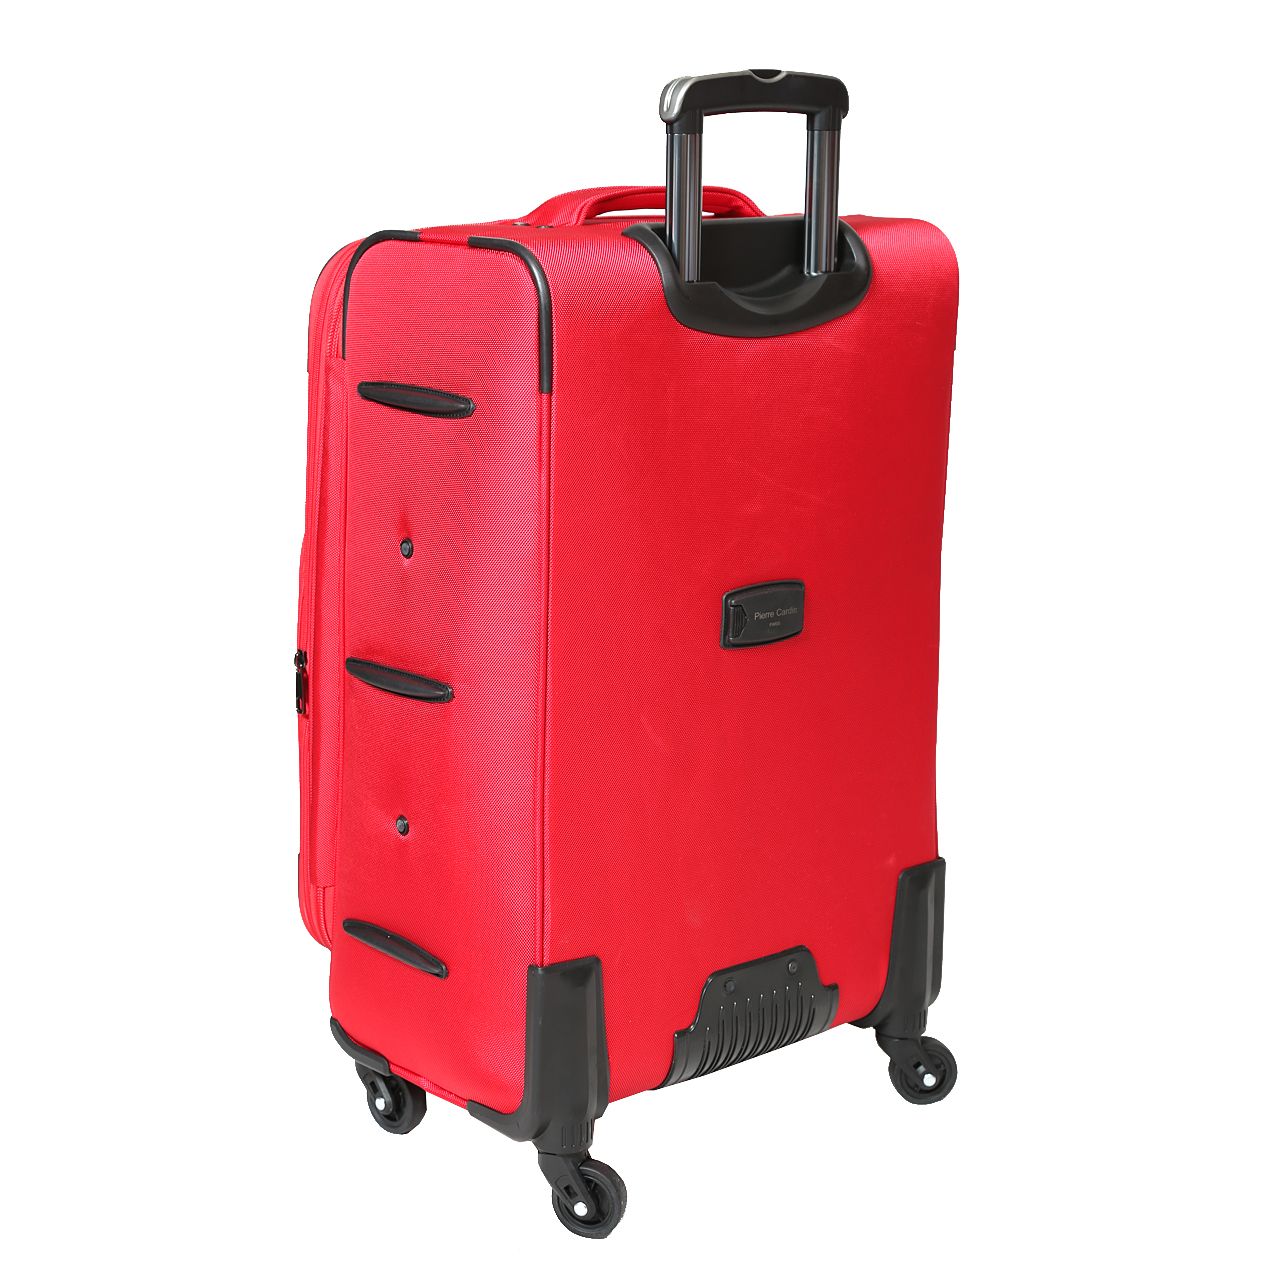  چمدان پیر کاردین مدل SBP1600 سایز متوسط  -  - 10